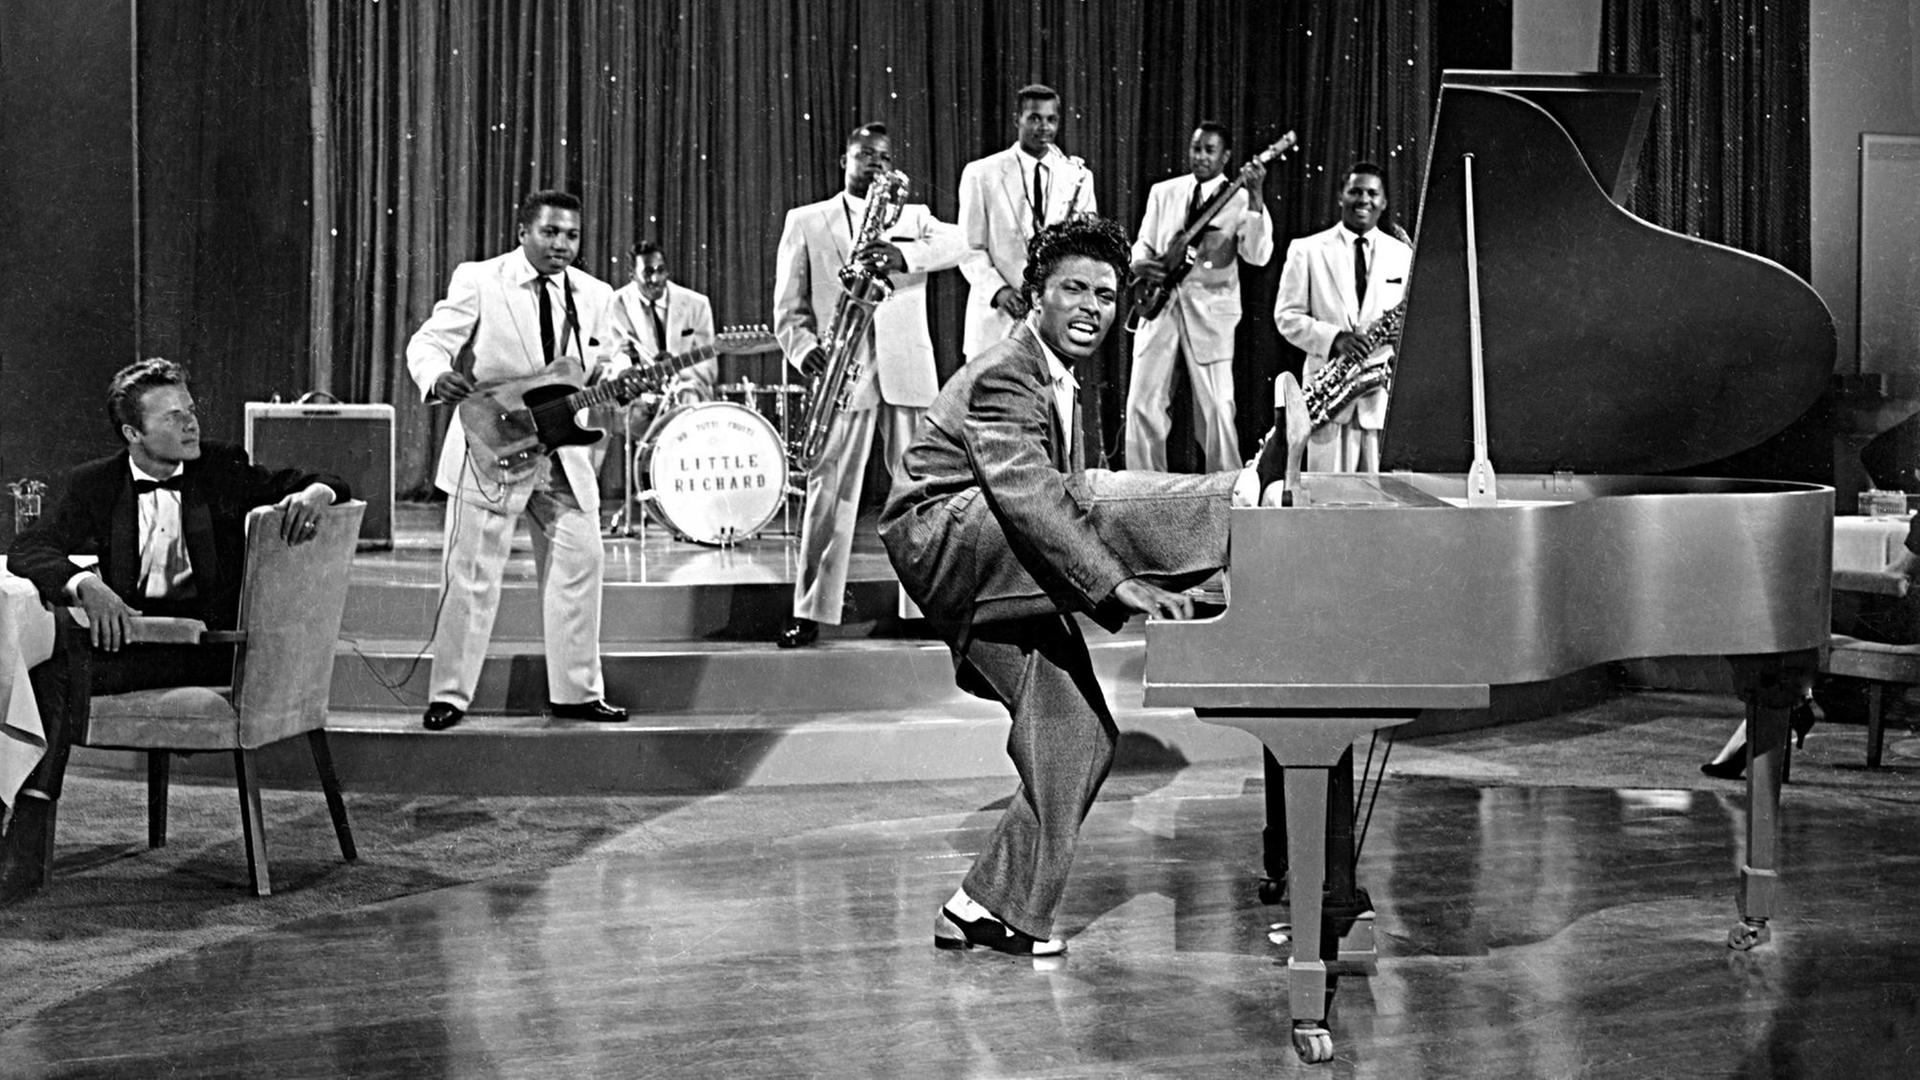 Eine historische Aufnahme in scharz-weiß zeigt den Musiker Little Richard am Klavier bei einer Fernsehaufzeichnung. Er hebt sein rechtes Bein. Im Hintergrund ist seine sechsköpfige Band zu sehen.